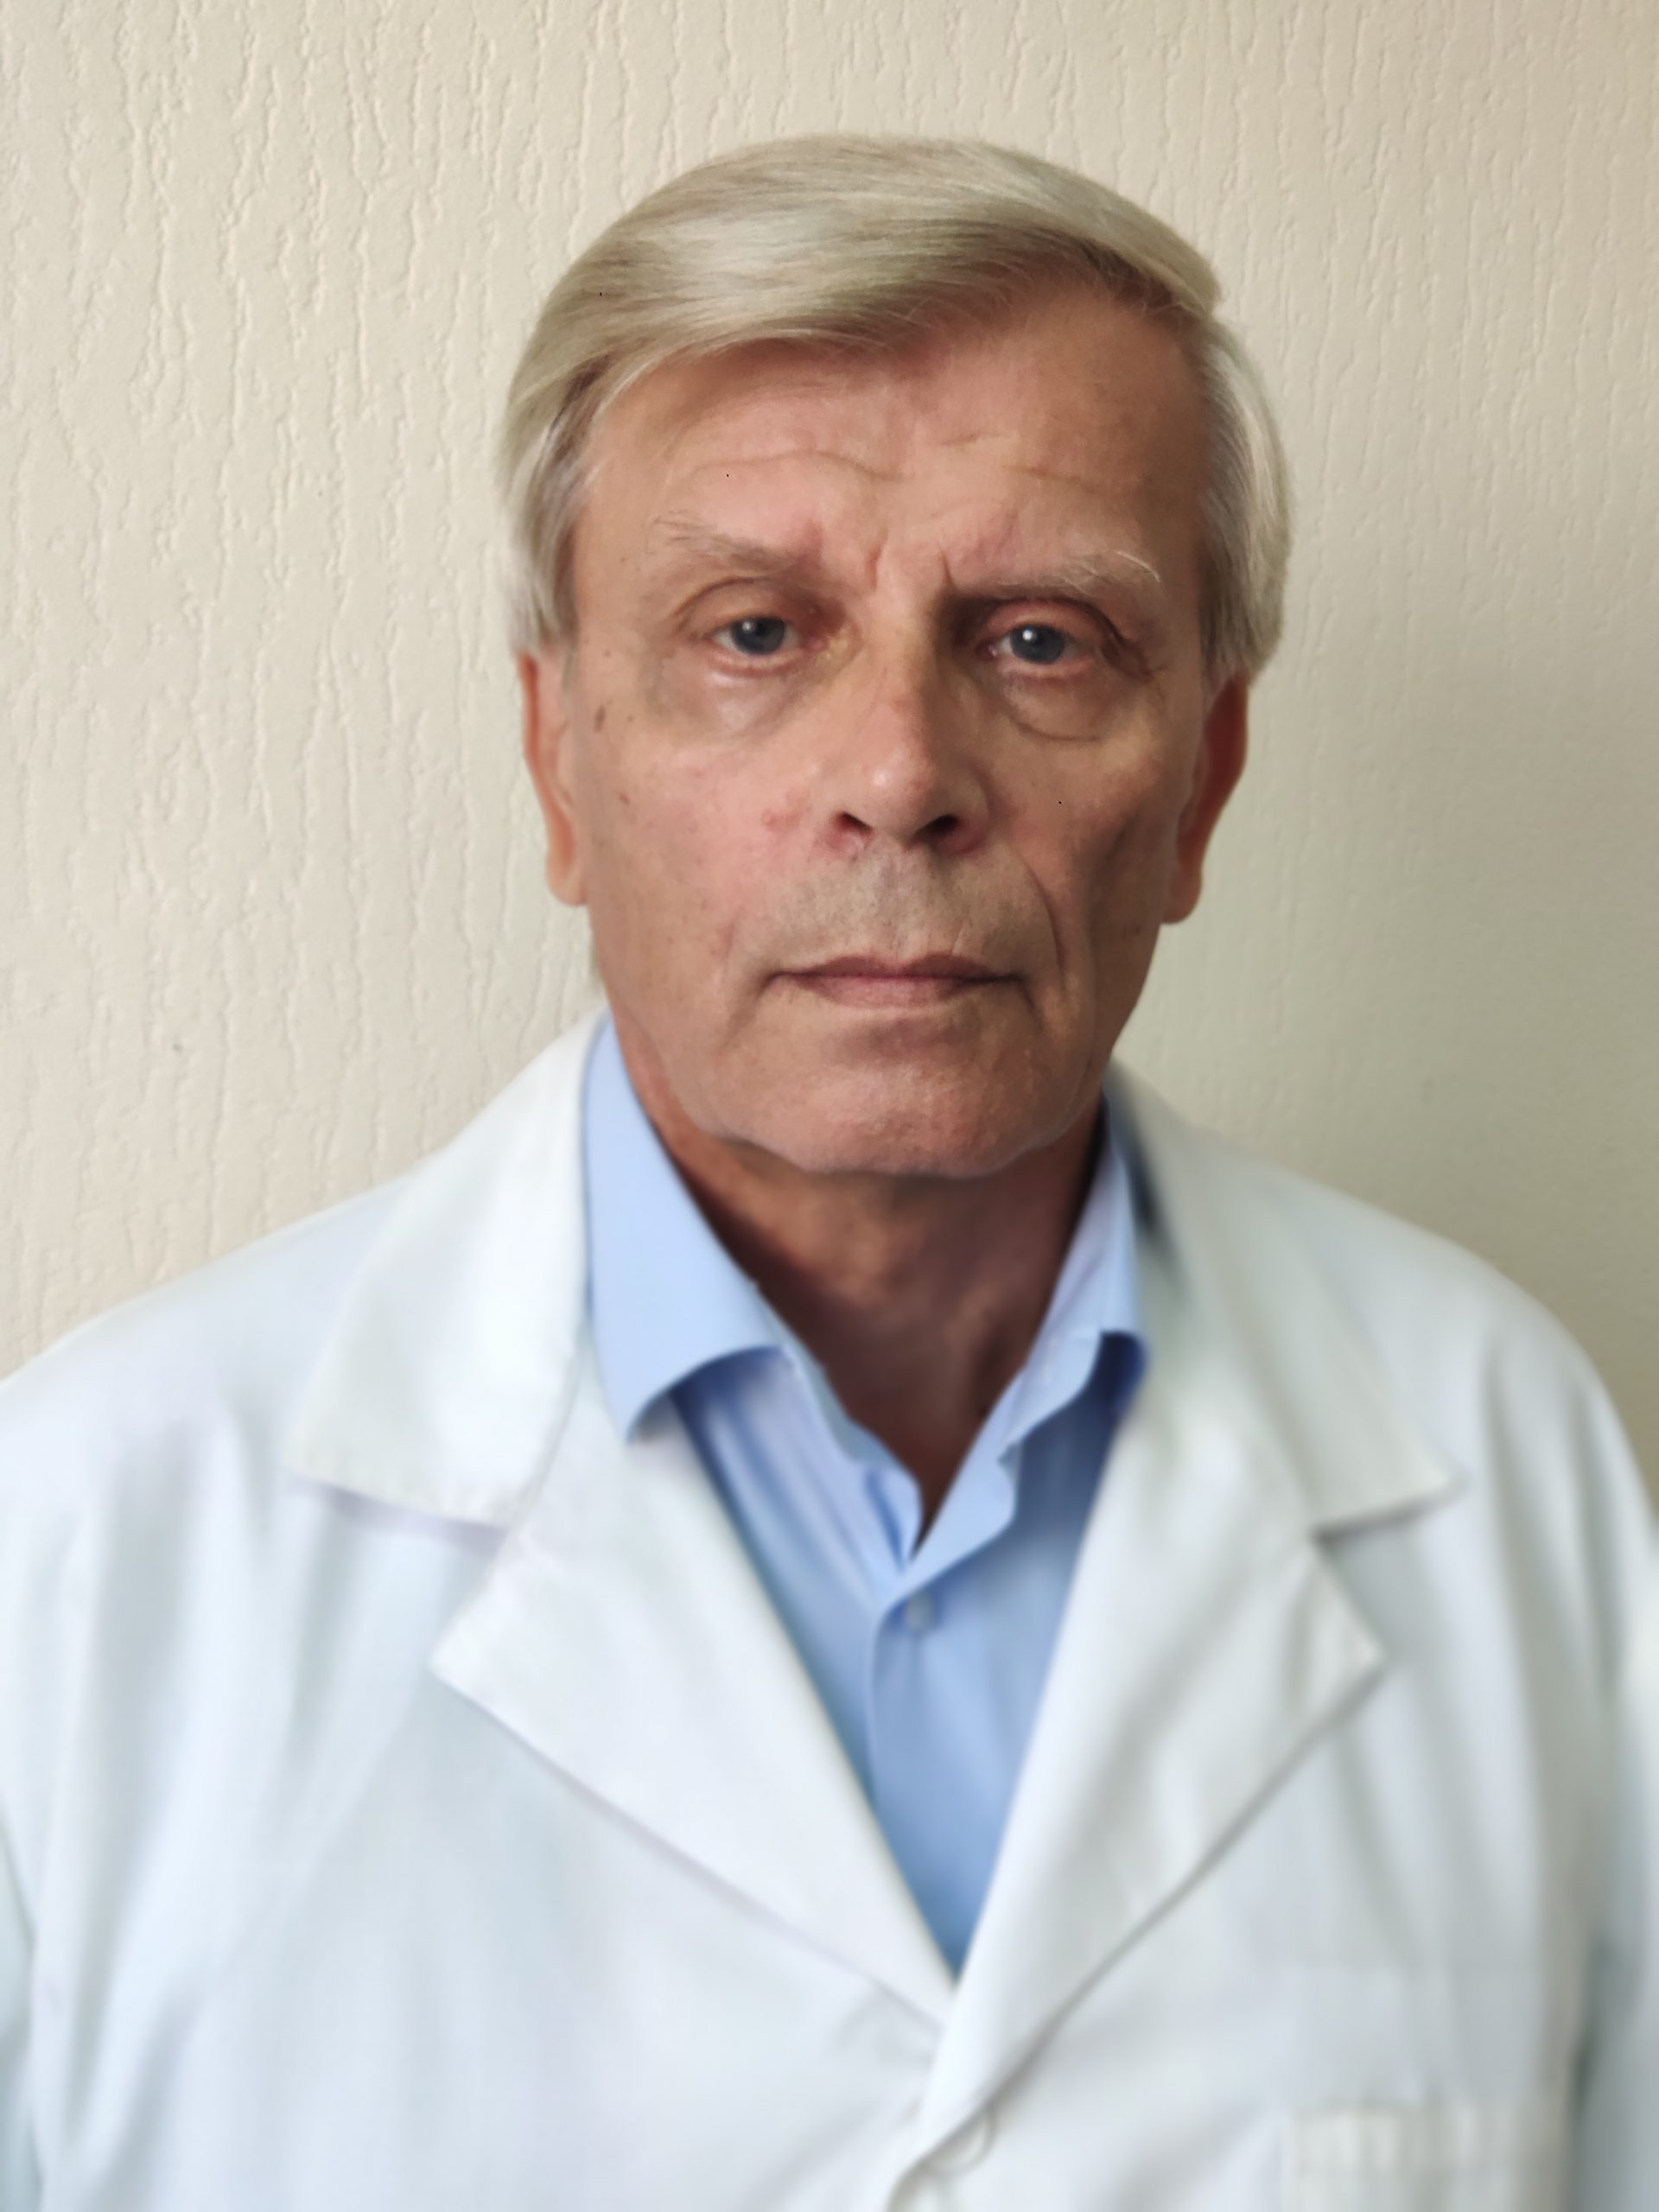 Алехин сосудистый хирург Тула. Отделение сосудистой хирургии в Зеленограде. Плетнева больница 57 врачи сосудистой хирургии.